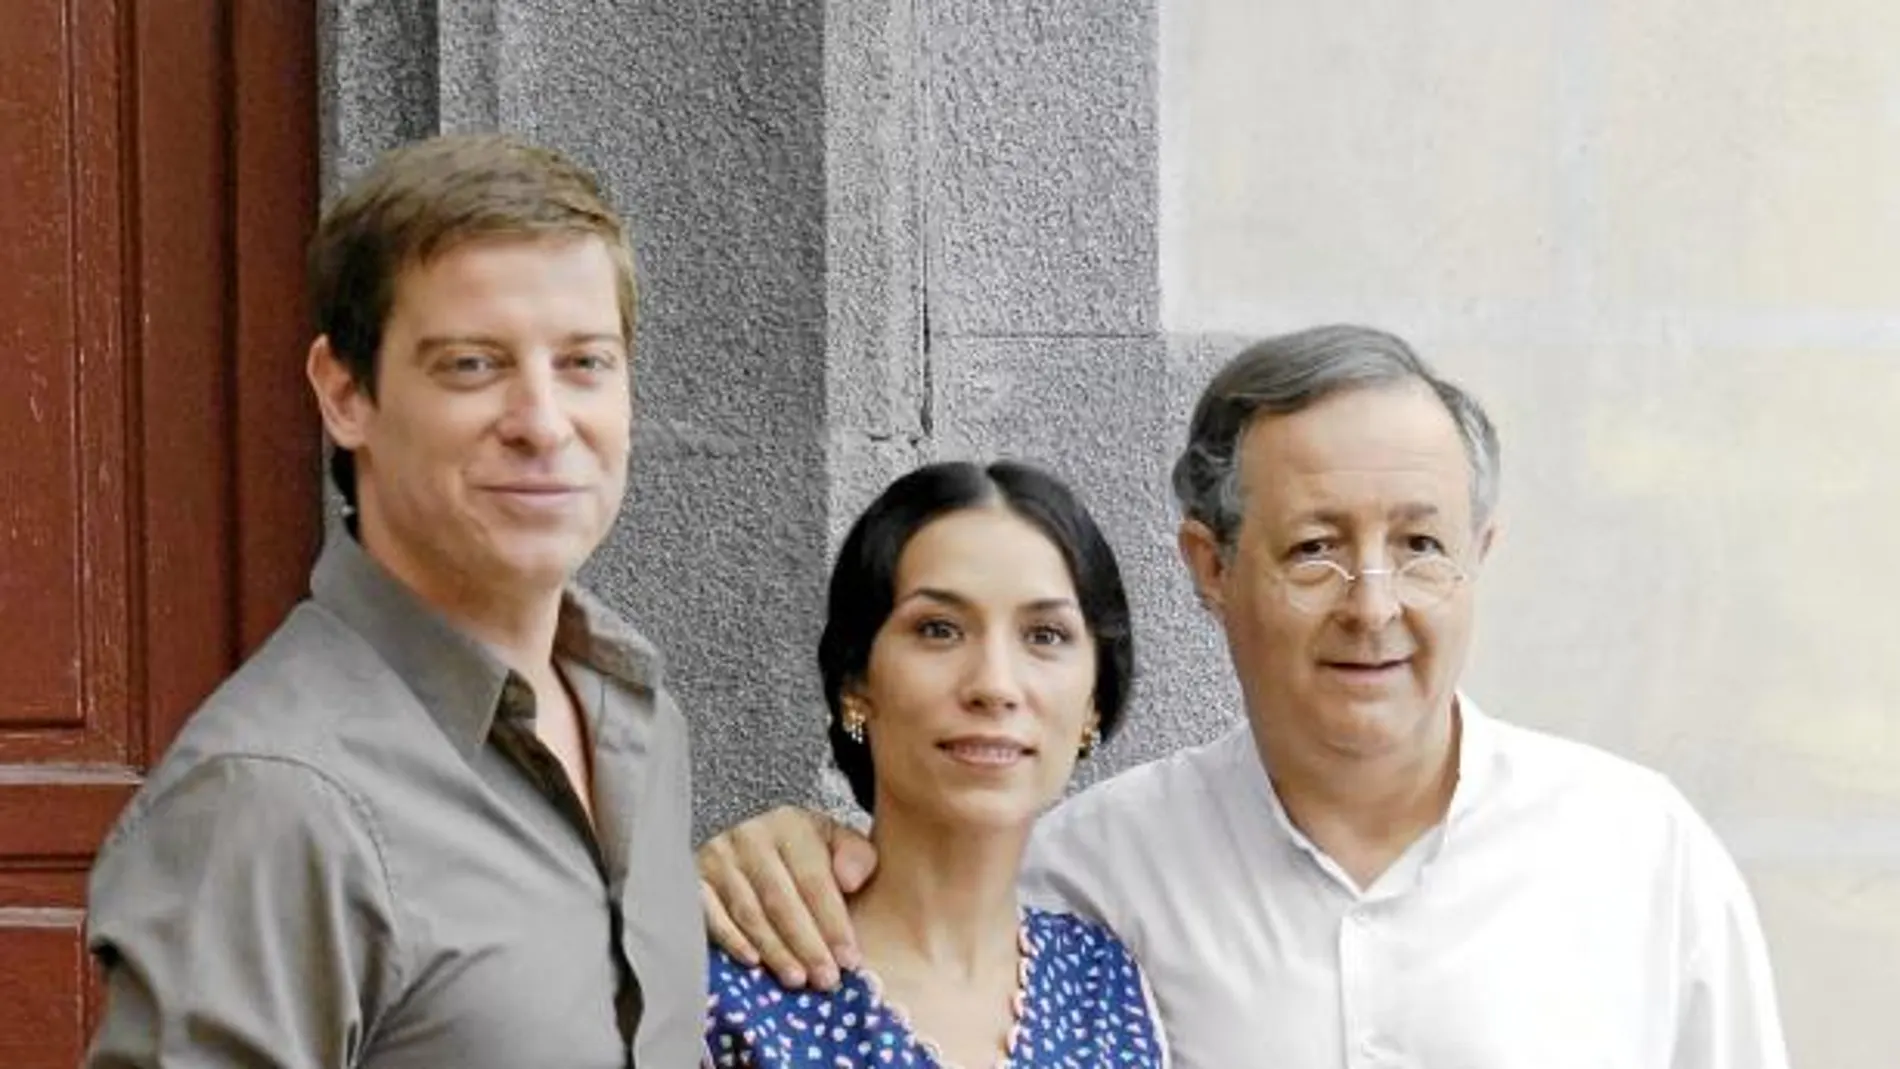 Las tramas cambian, pero los dueños de El Asturiano permanecen